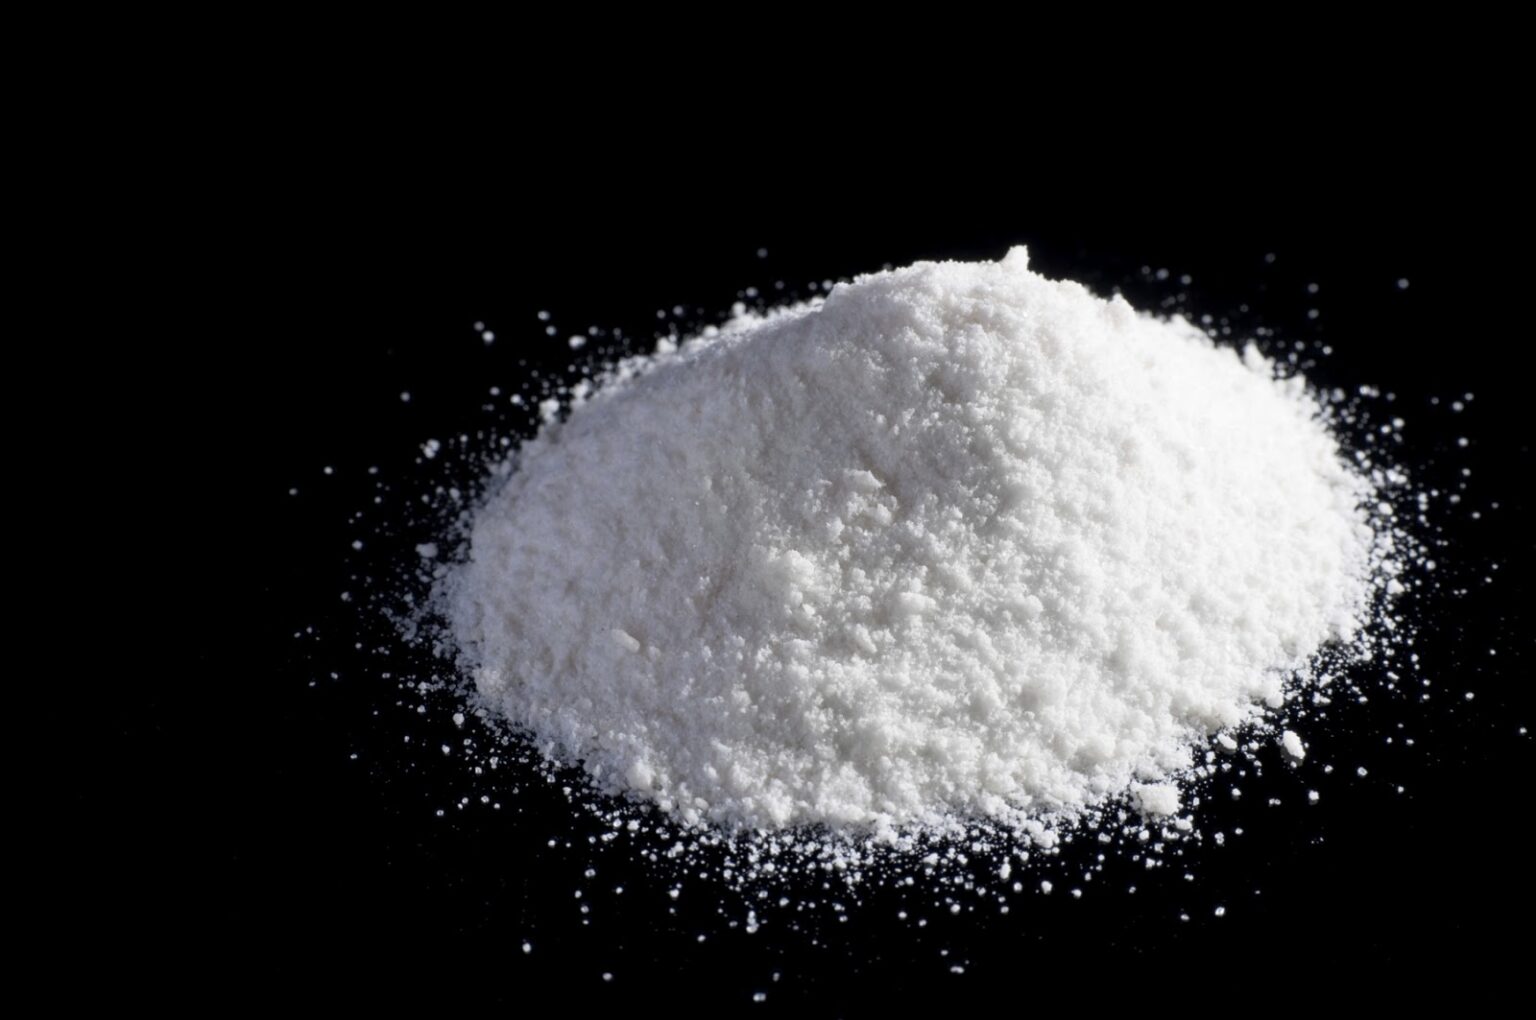 Cuanto cuesta un kilo de cocaina